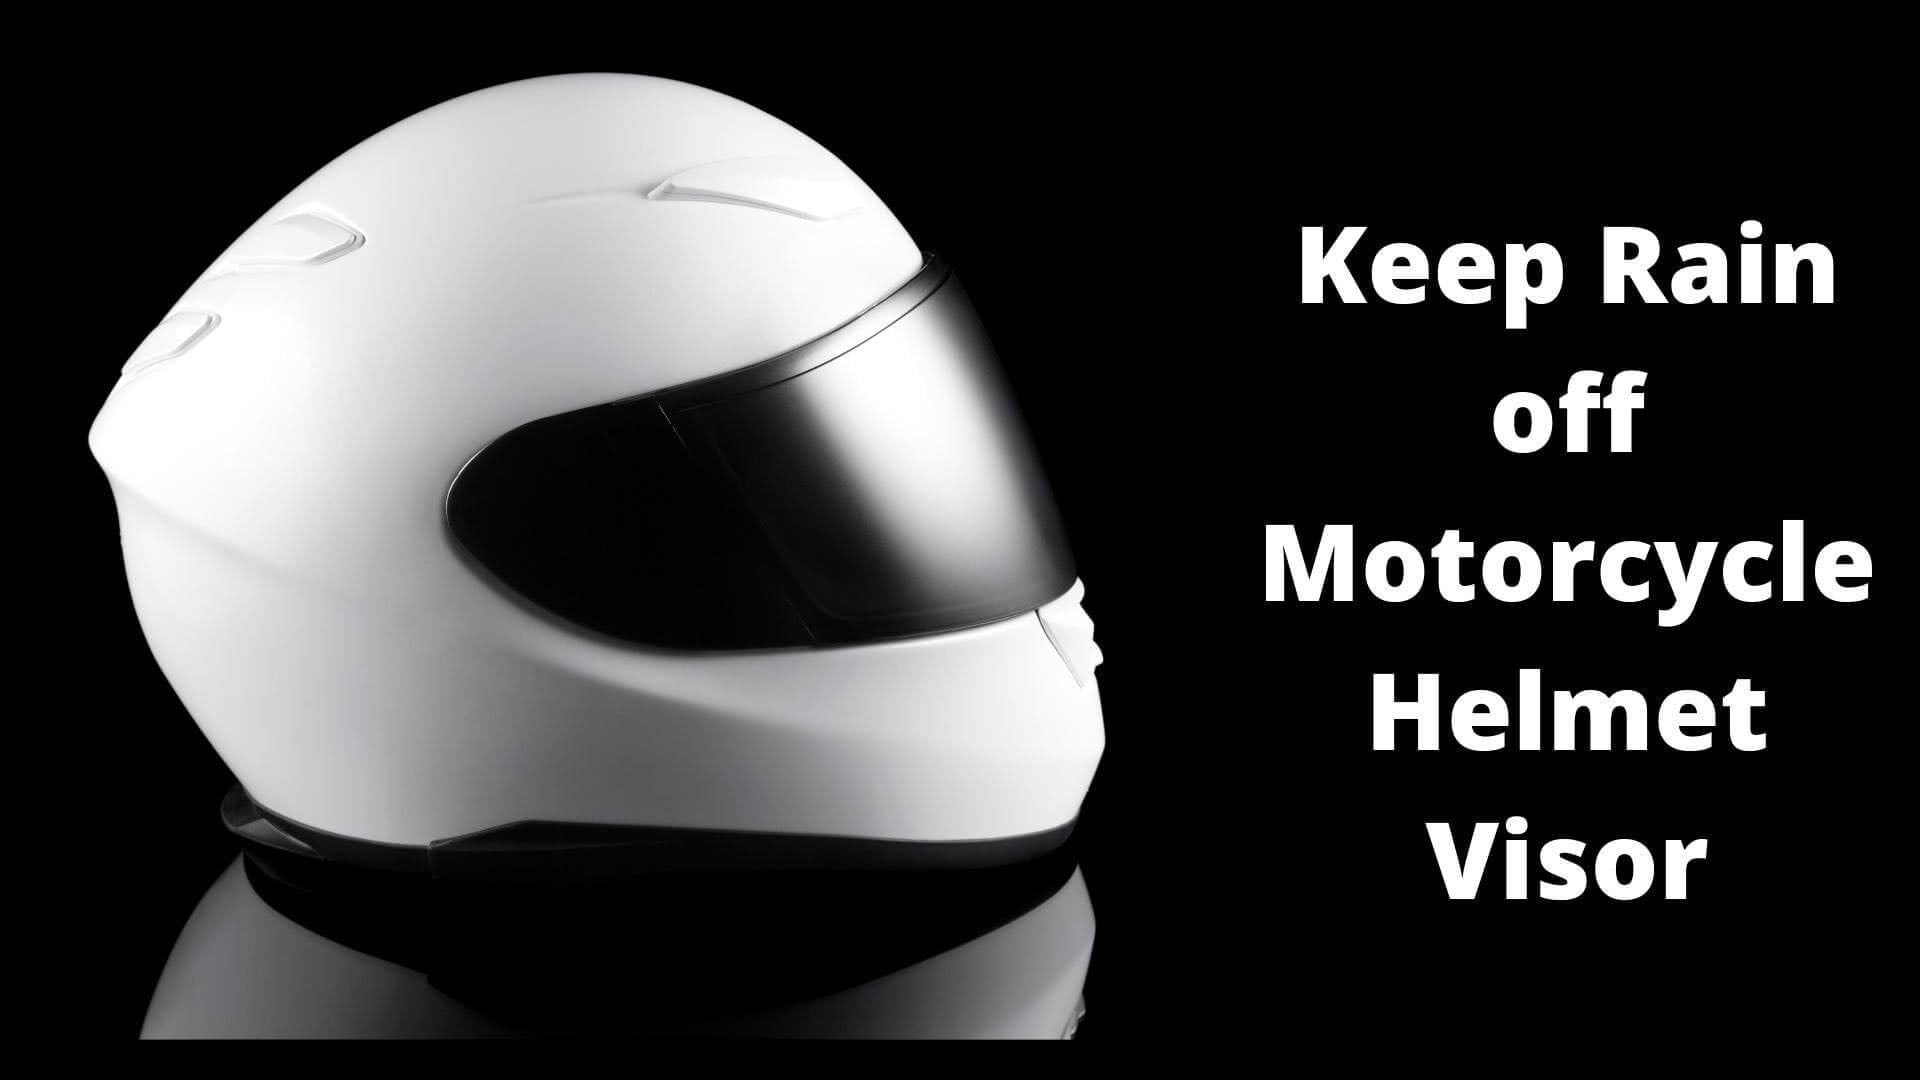 How to Keep Rain off Motorcycle Helmet Visor